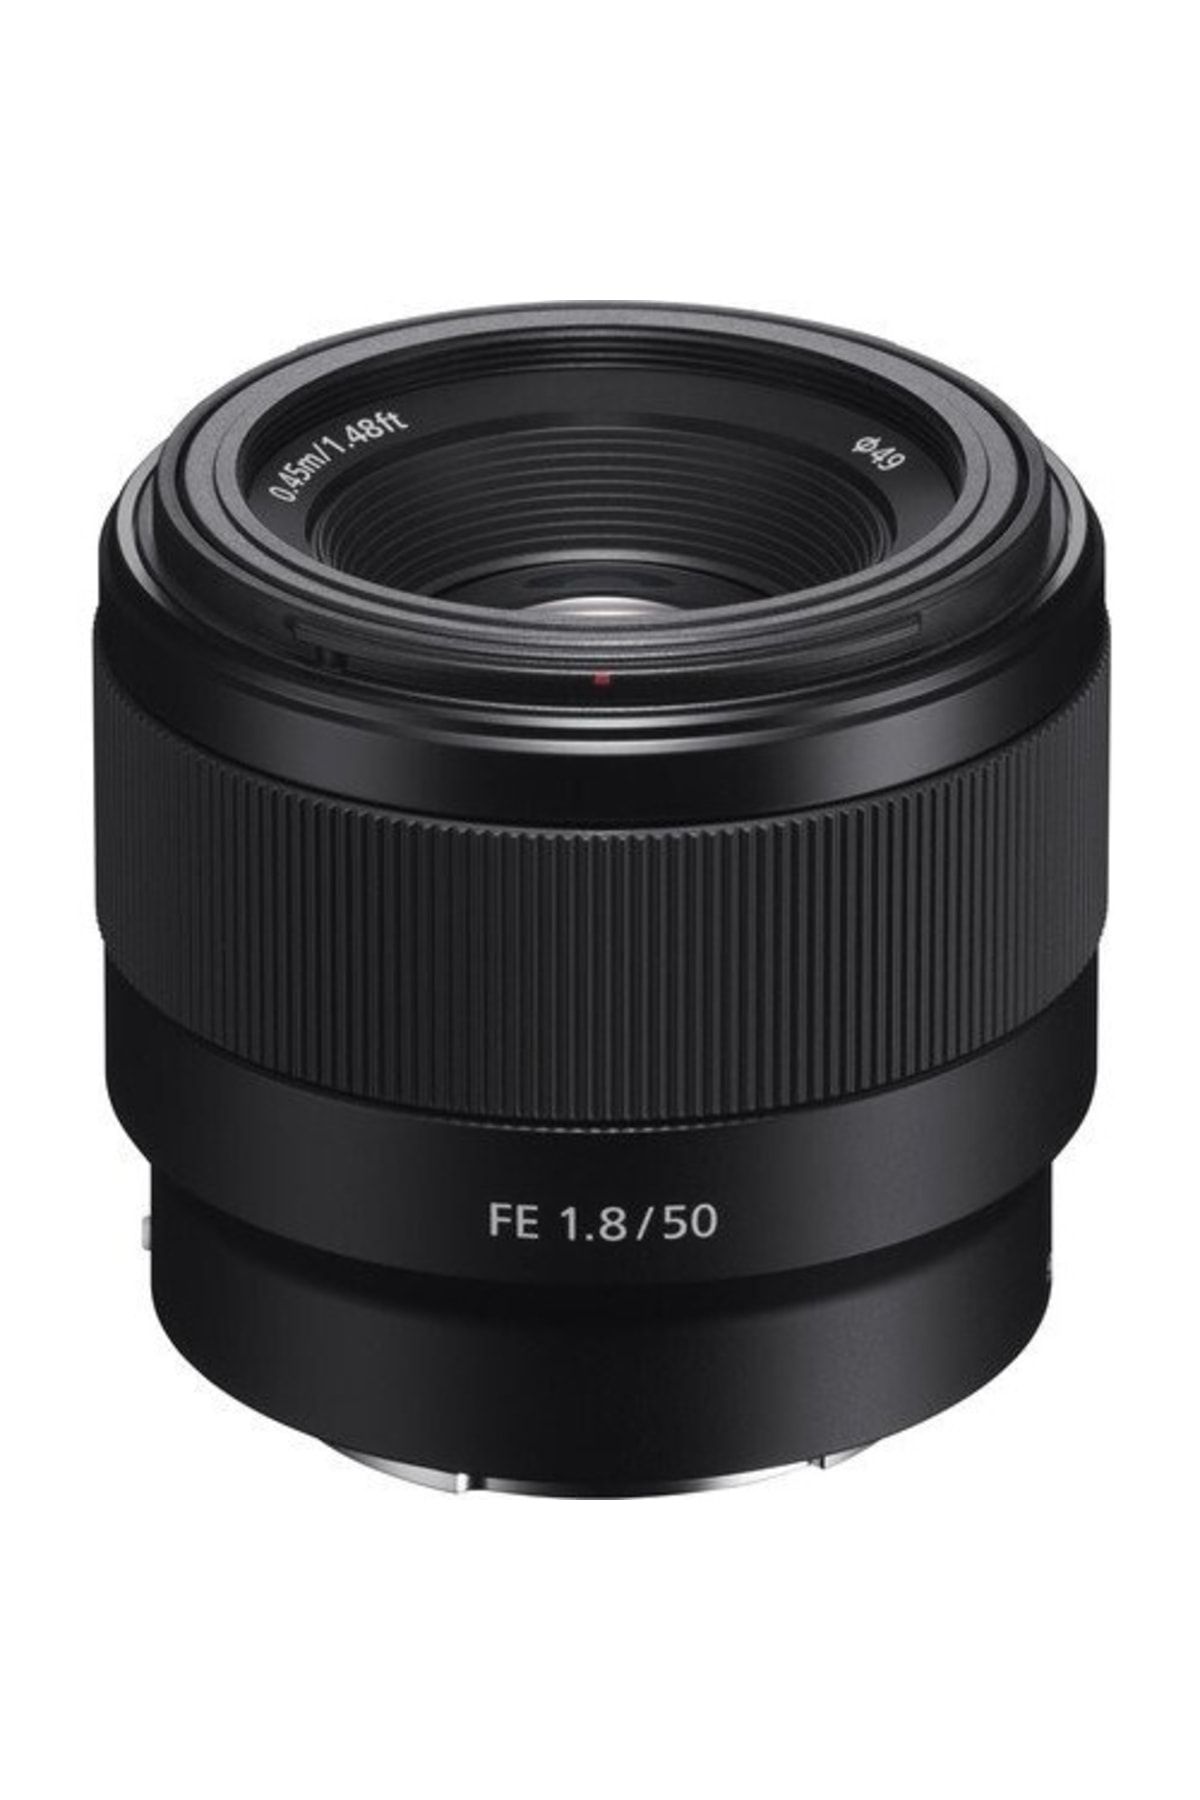 Sony Fe 50 Mm F1.8 Lens